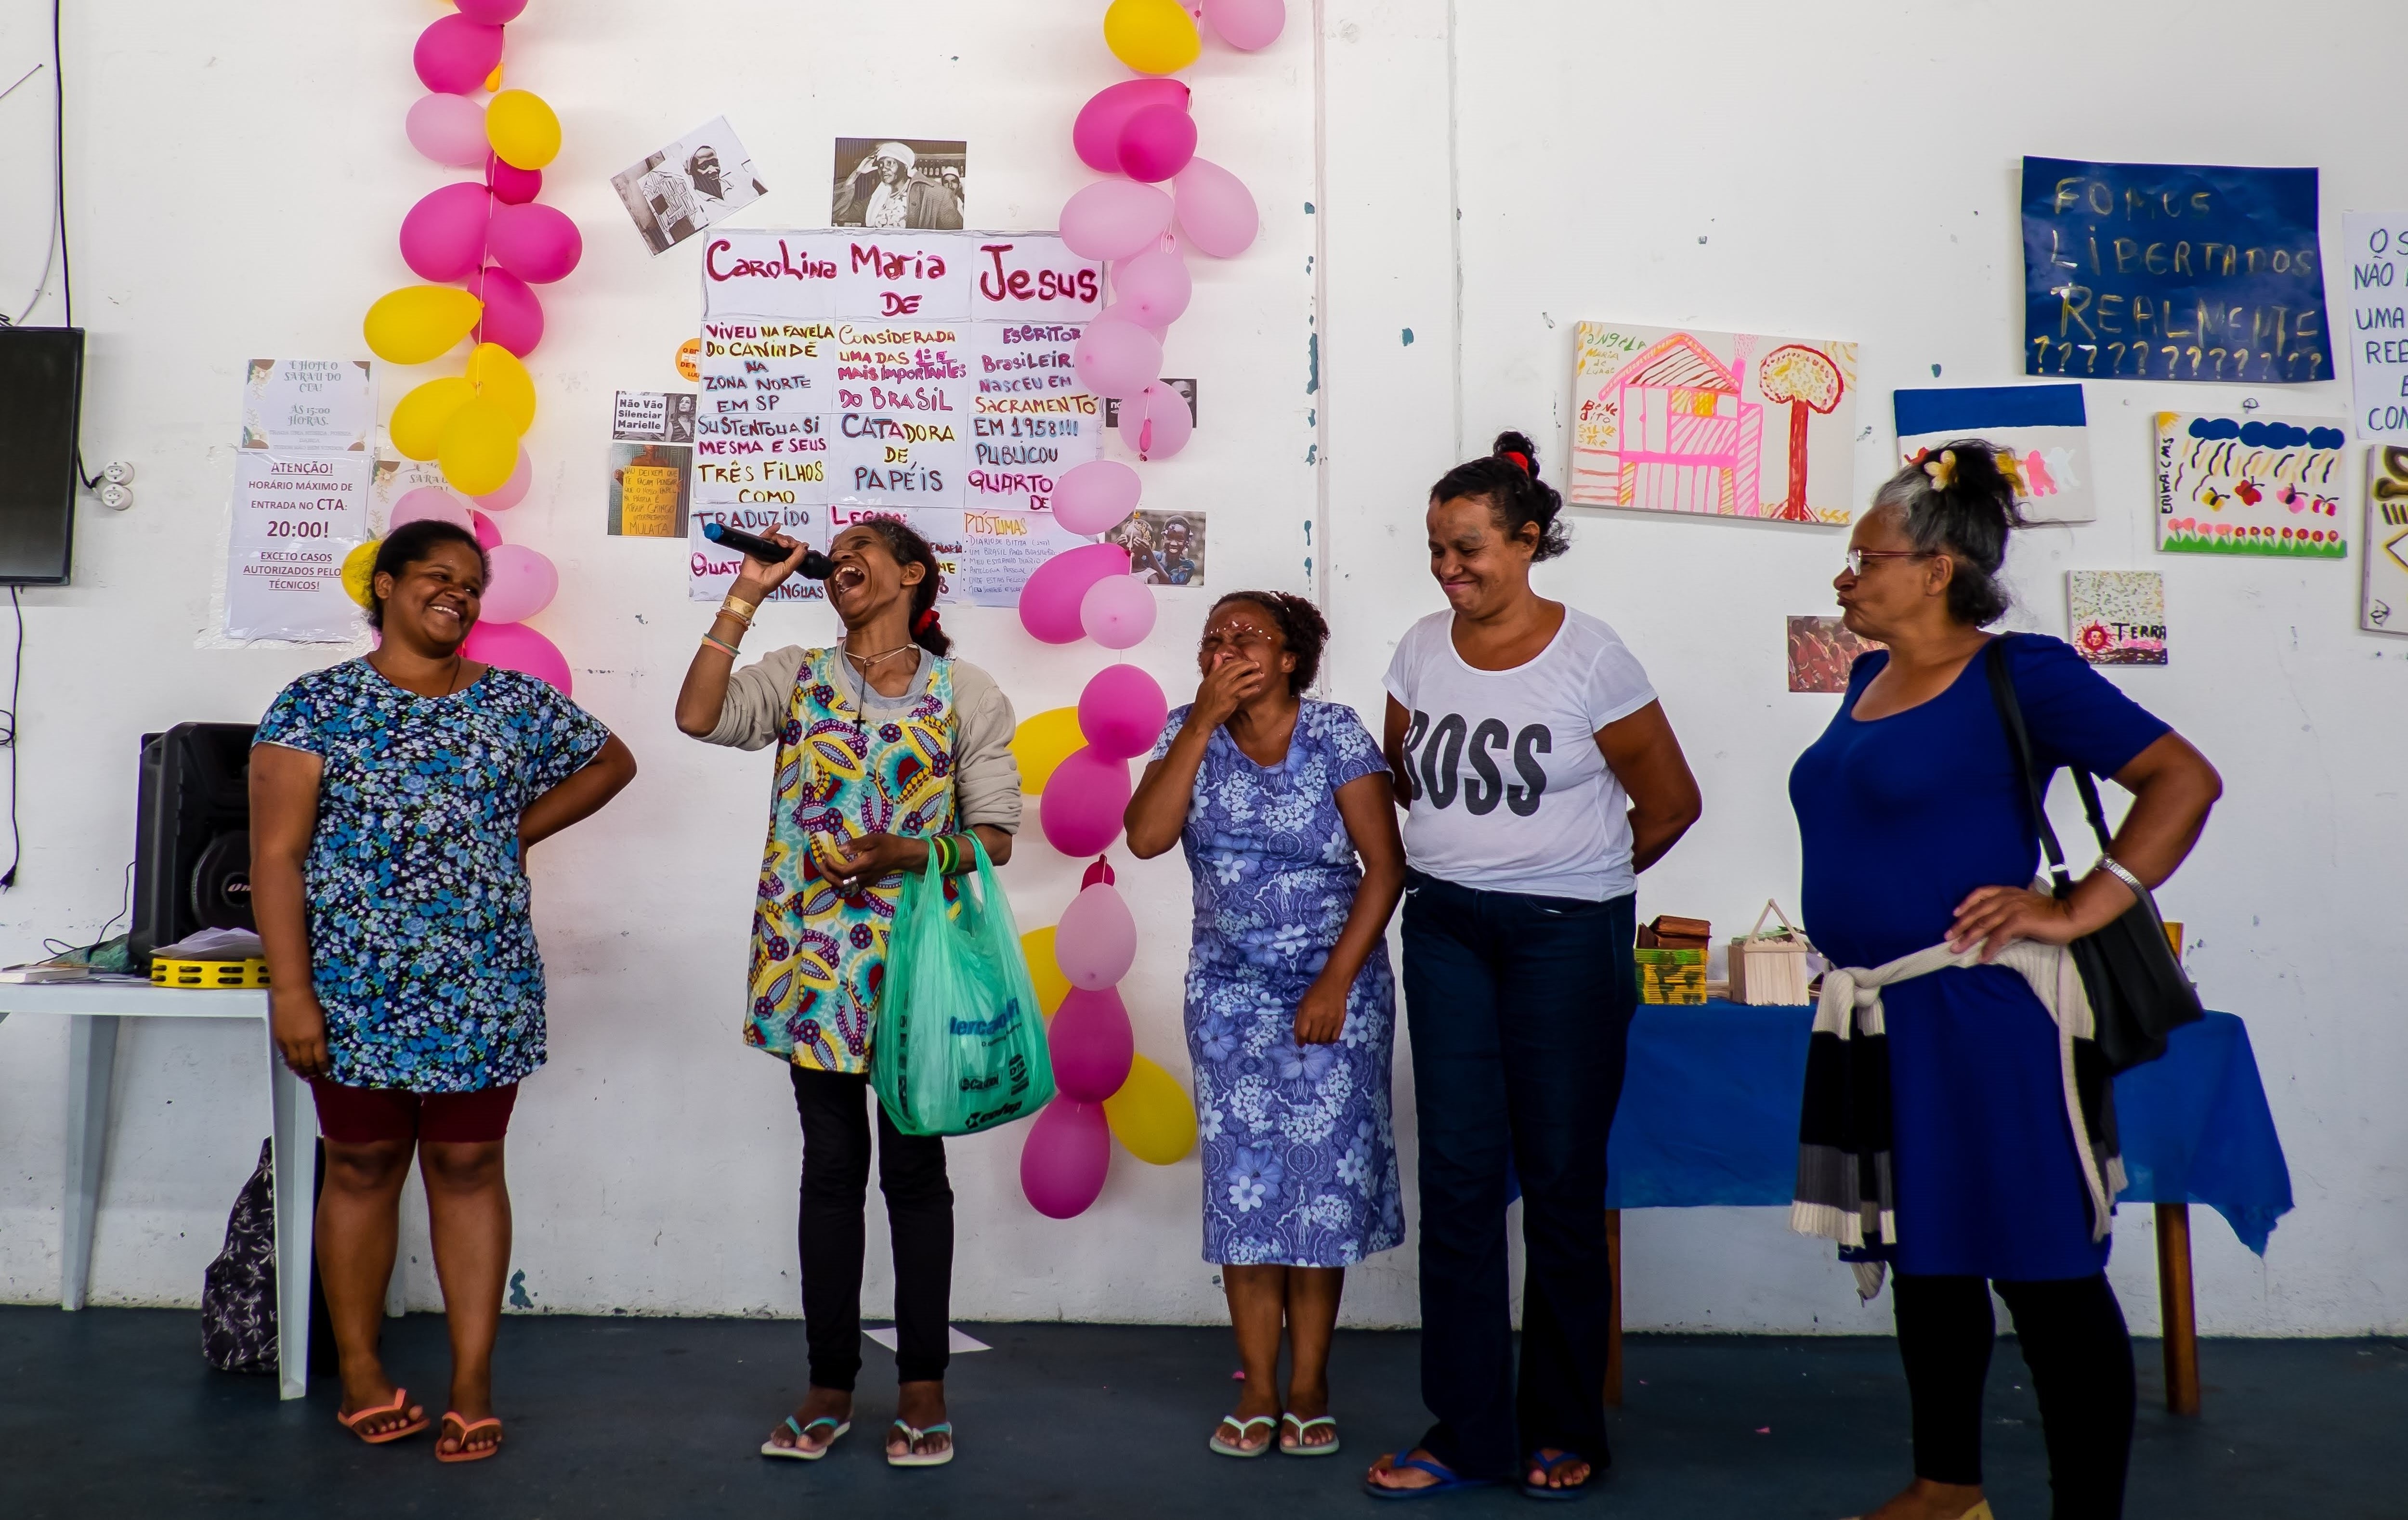 Cinco conviventes no palco rindo enquanto uma delas canta ao microfone com balões amarelos e rosas na parede dos fundos